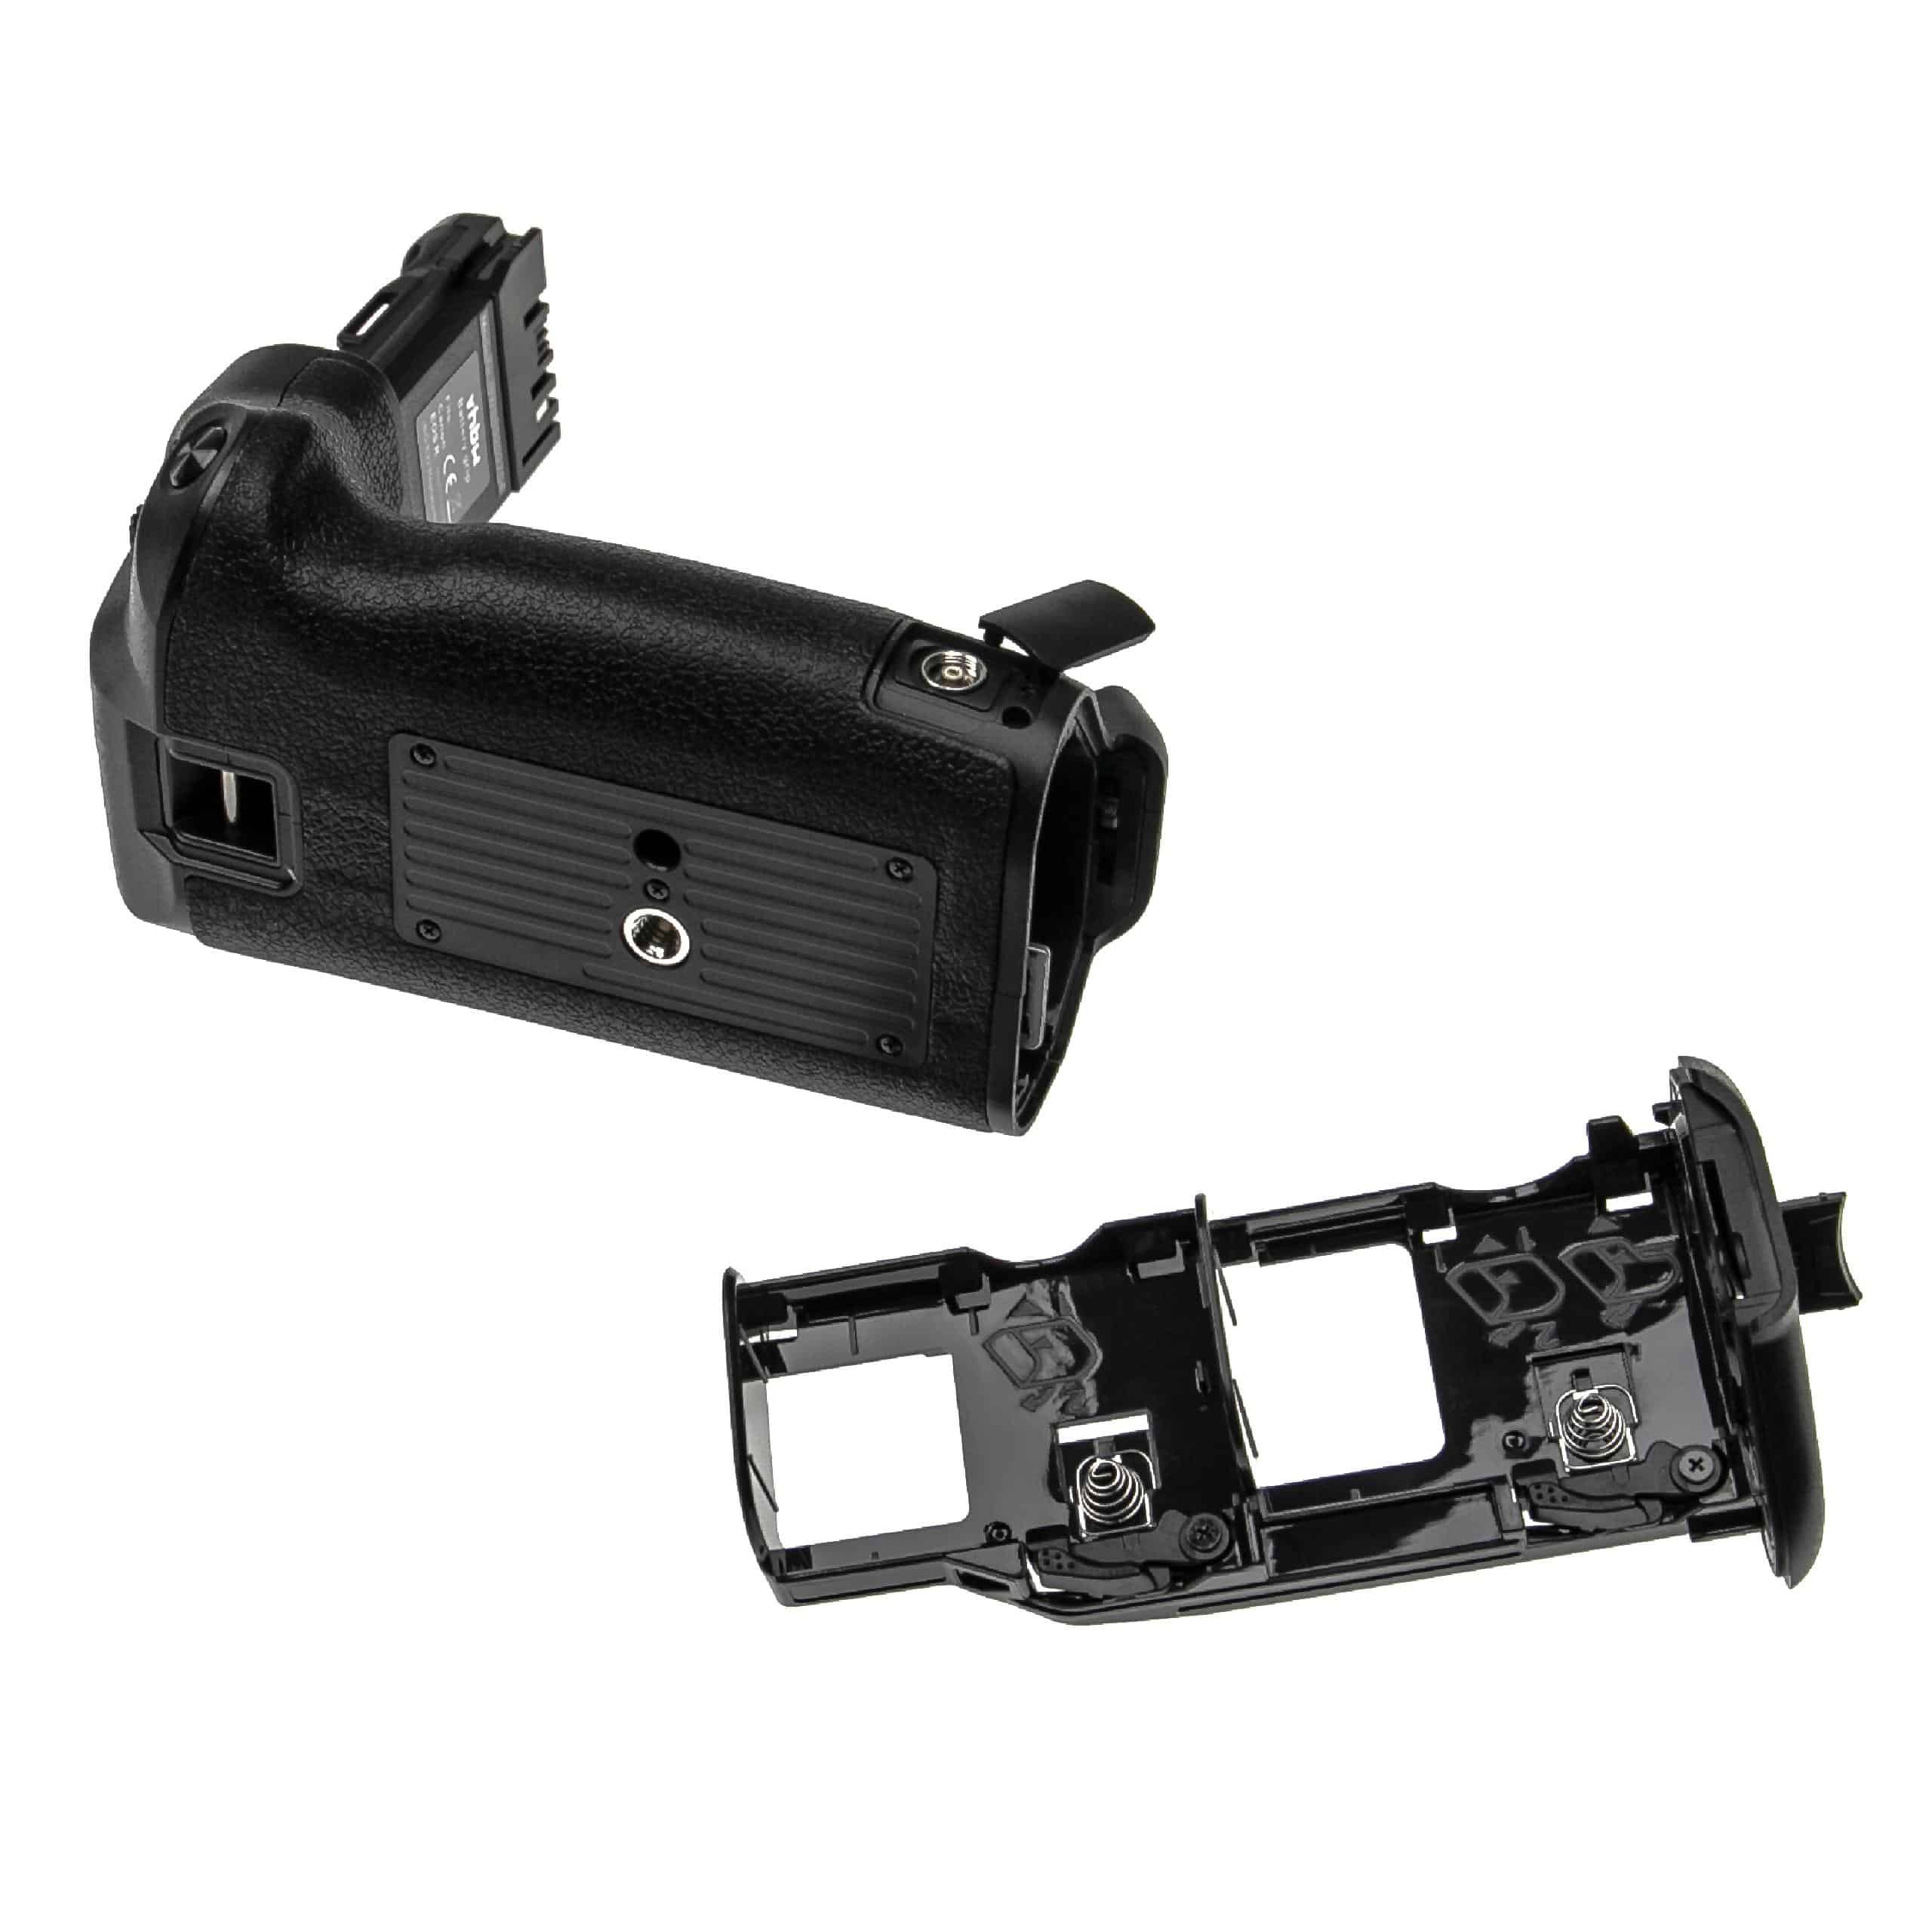 Batterie grip remplace Canon BG-E22, 3086C003 pour appareil photo Canon 